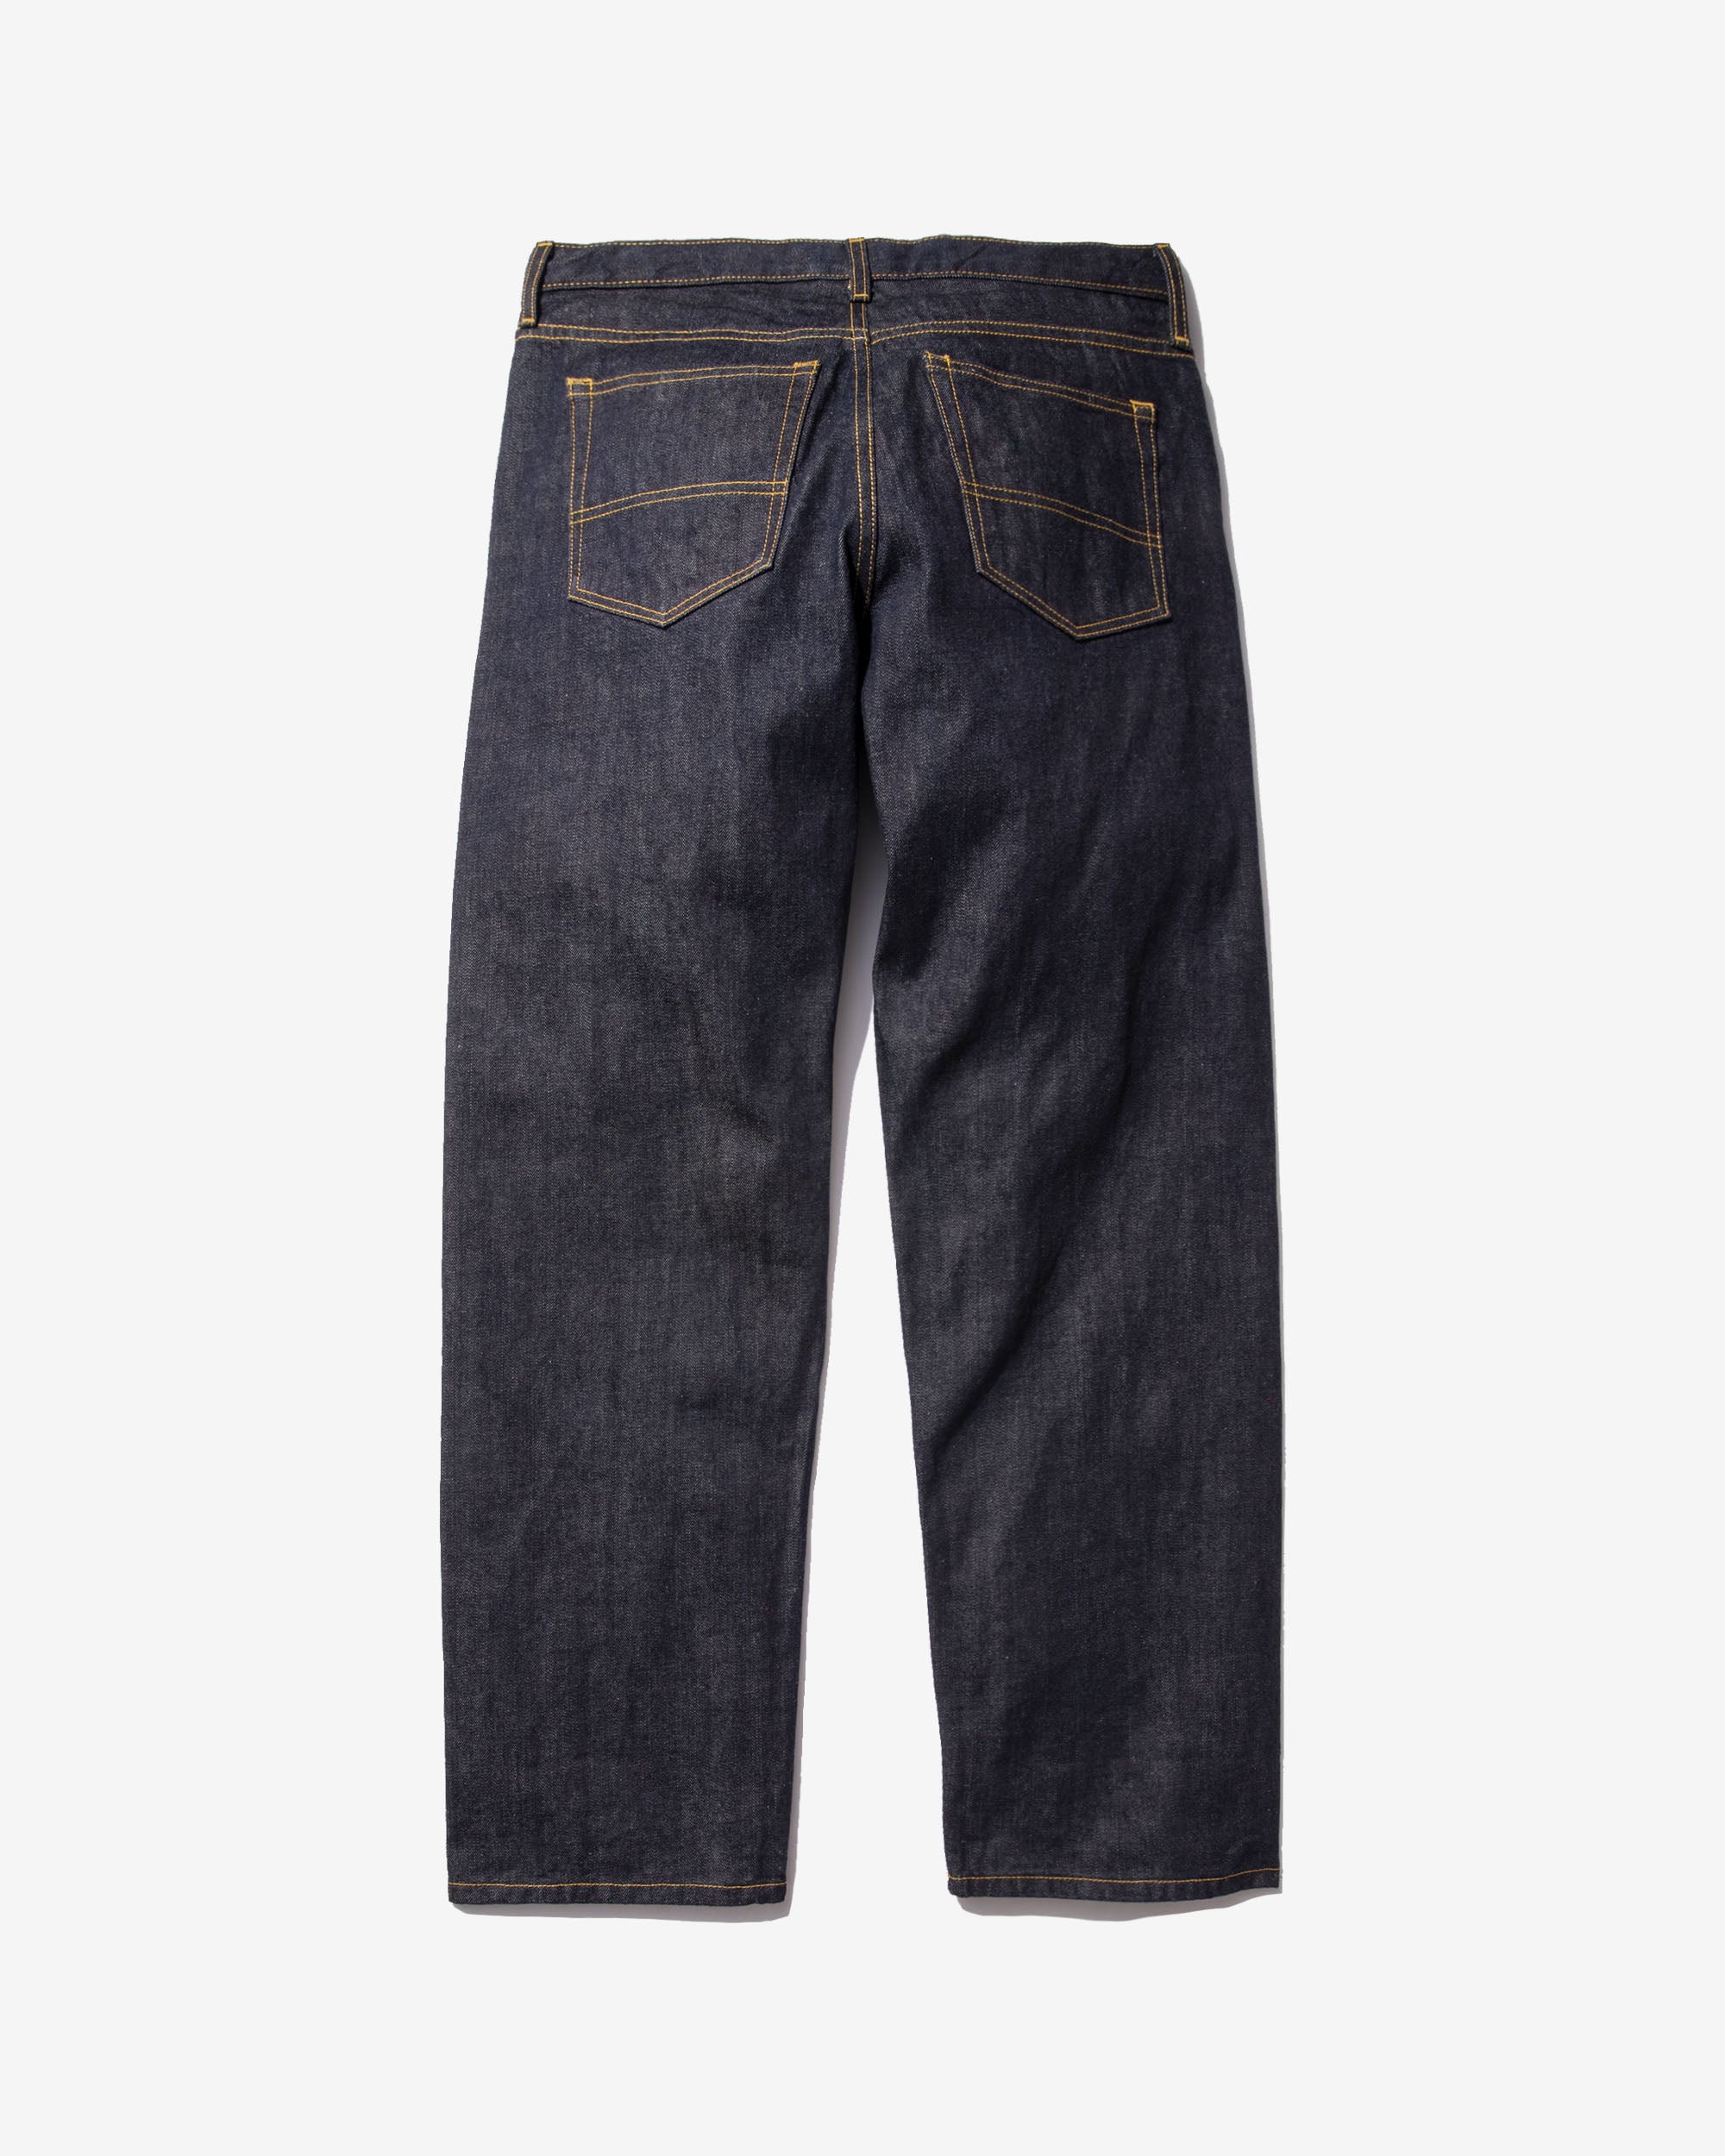 Buy Faded Dark Blue Denim Men's Jeans Online | Tistabene - Tistabene